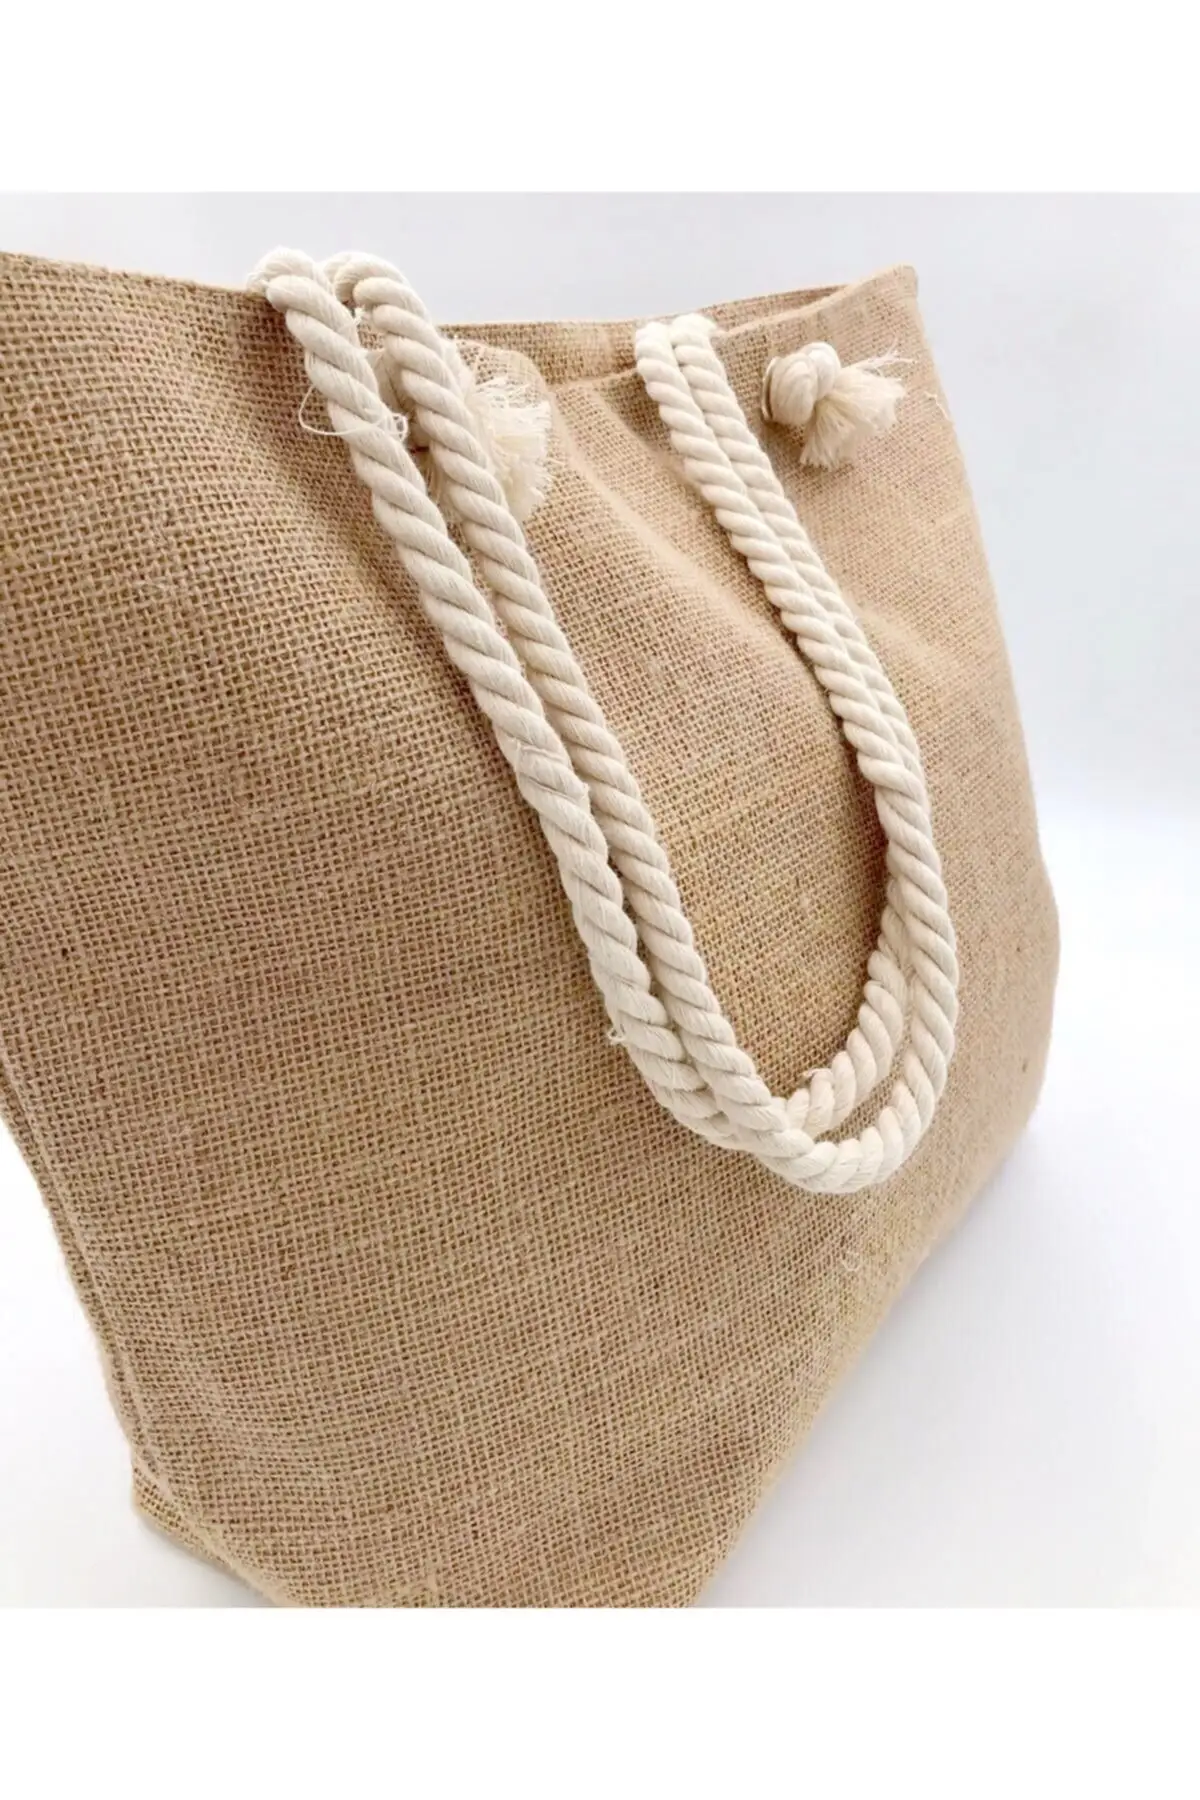 

Женская пляжная сумка Nova, соломенная цветная сумка-тоут, модная летняя вместительная сумка через плечо с рисунком, приблизительно